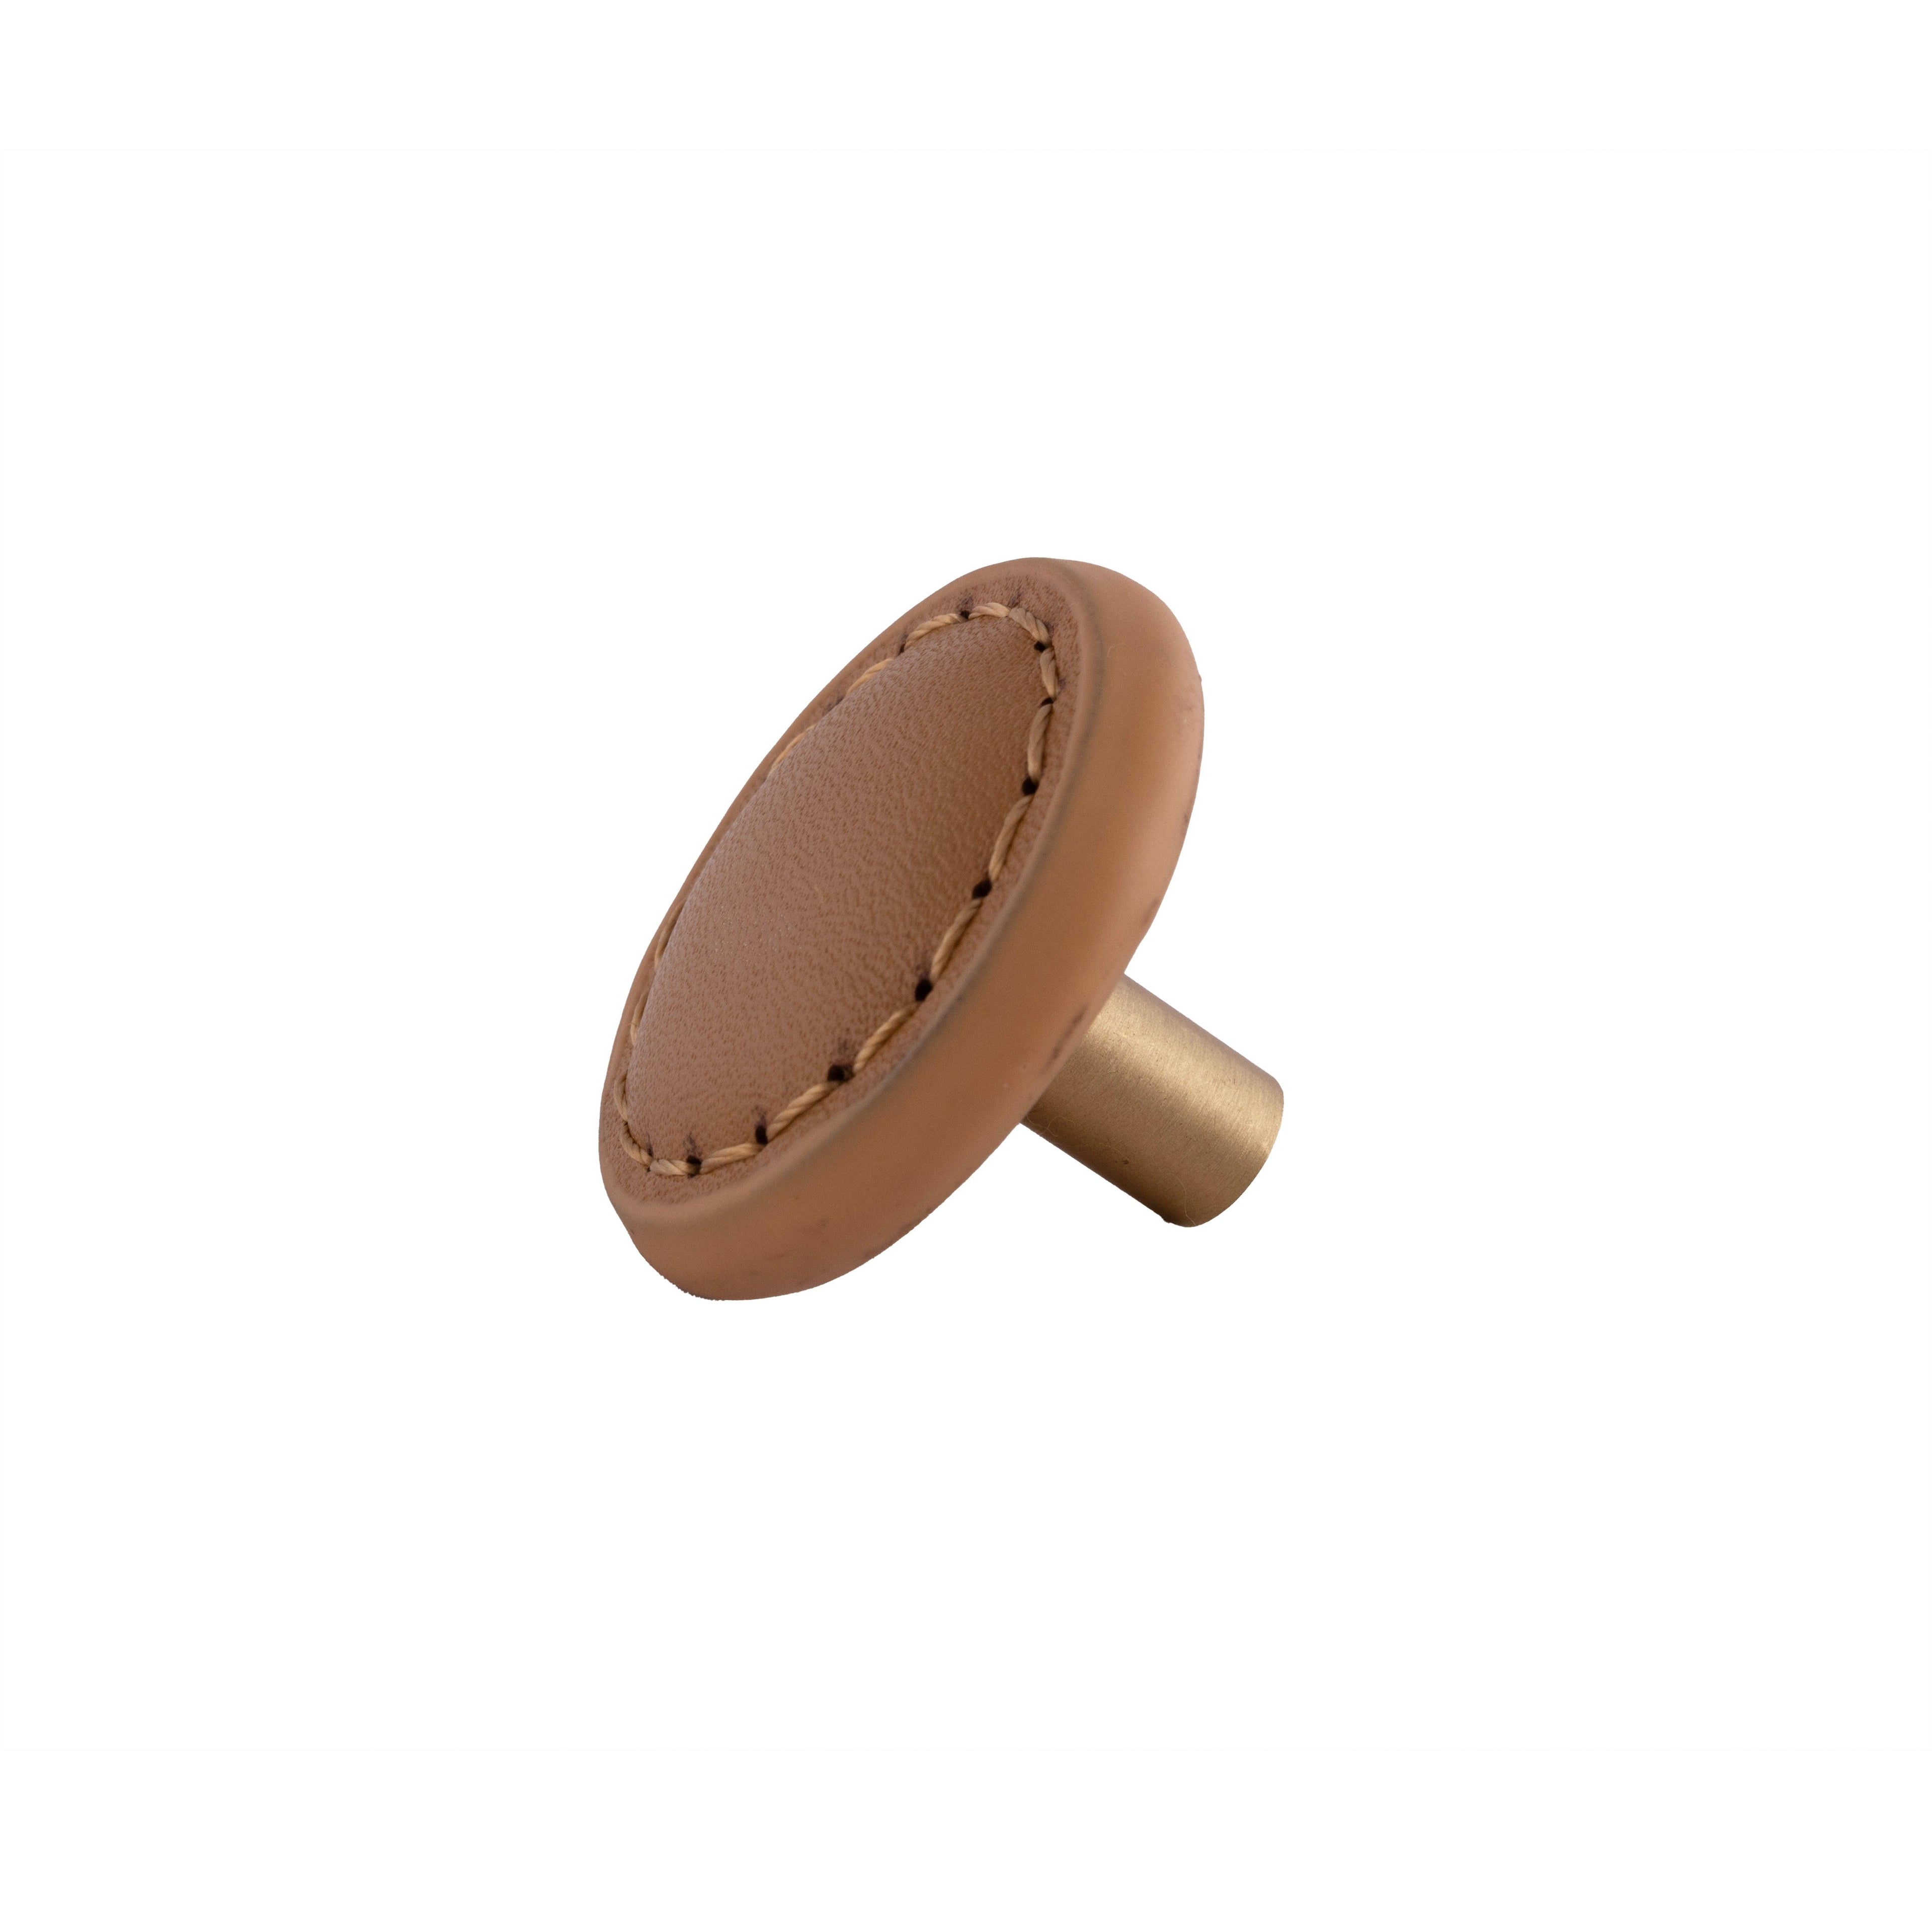 Sofia Round knob Knob 33mm / Brown / Leather - M A N T A R A